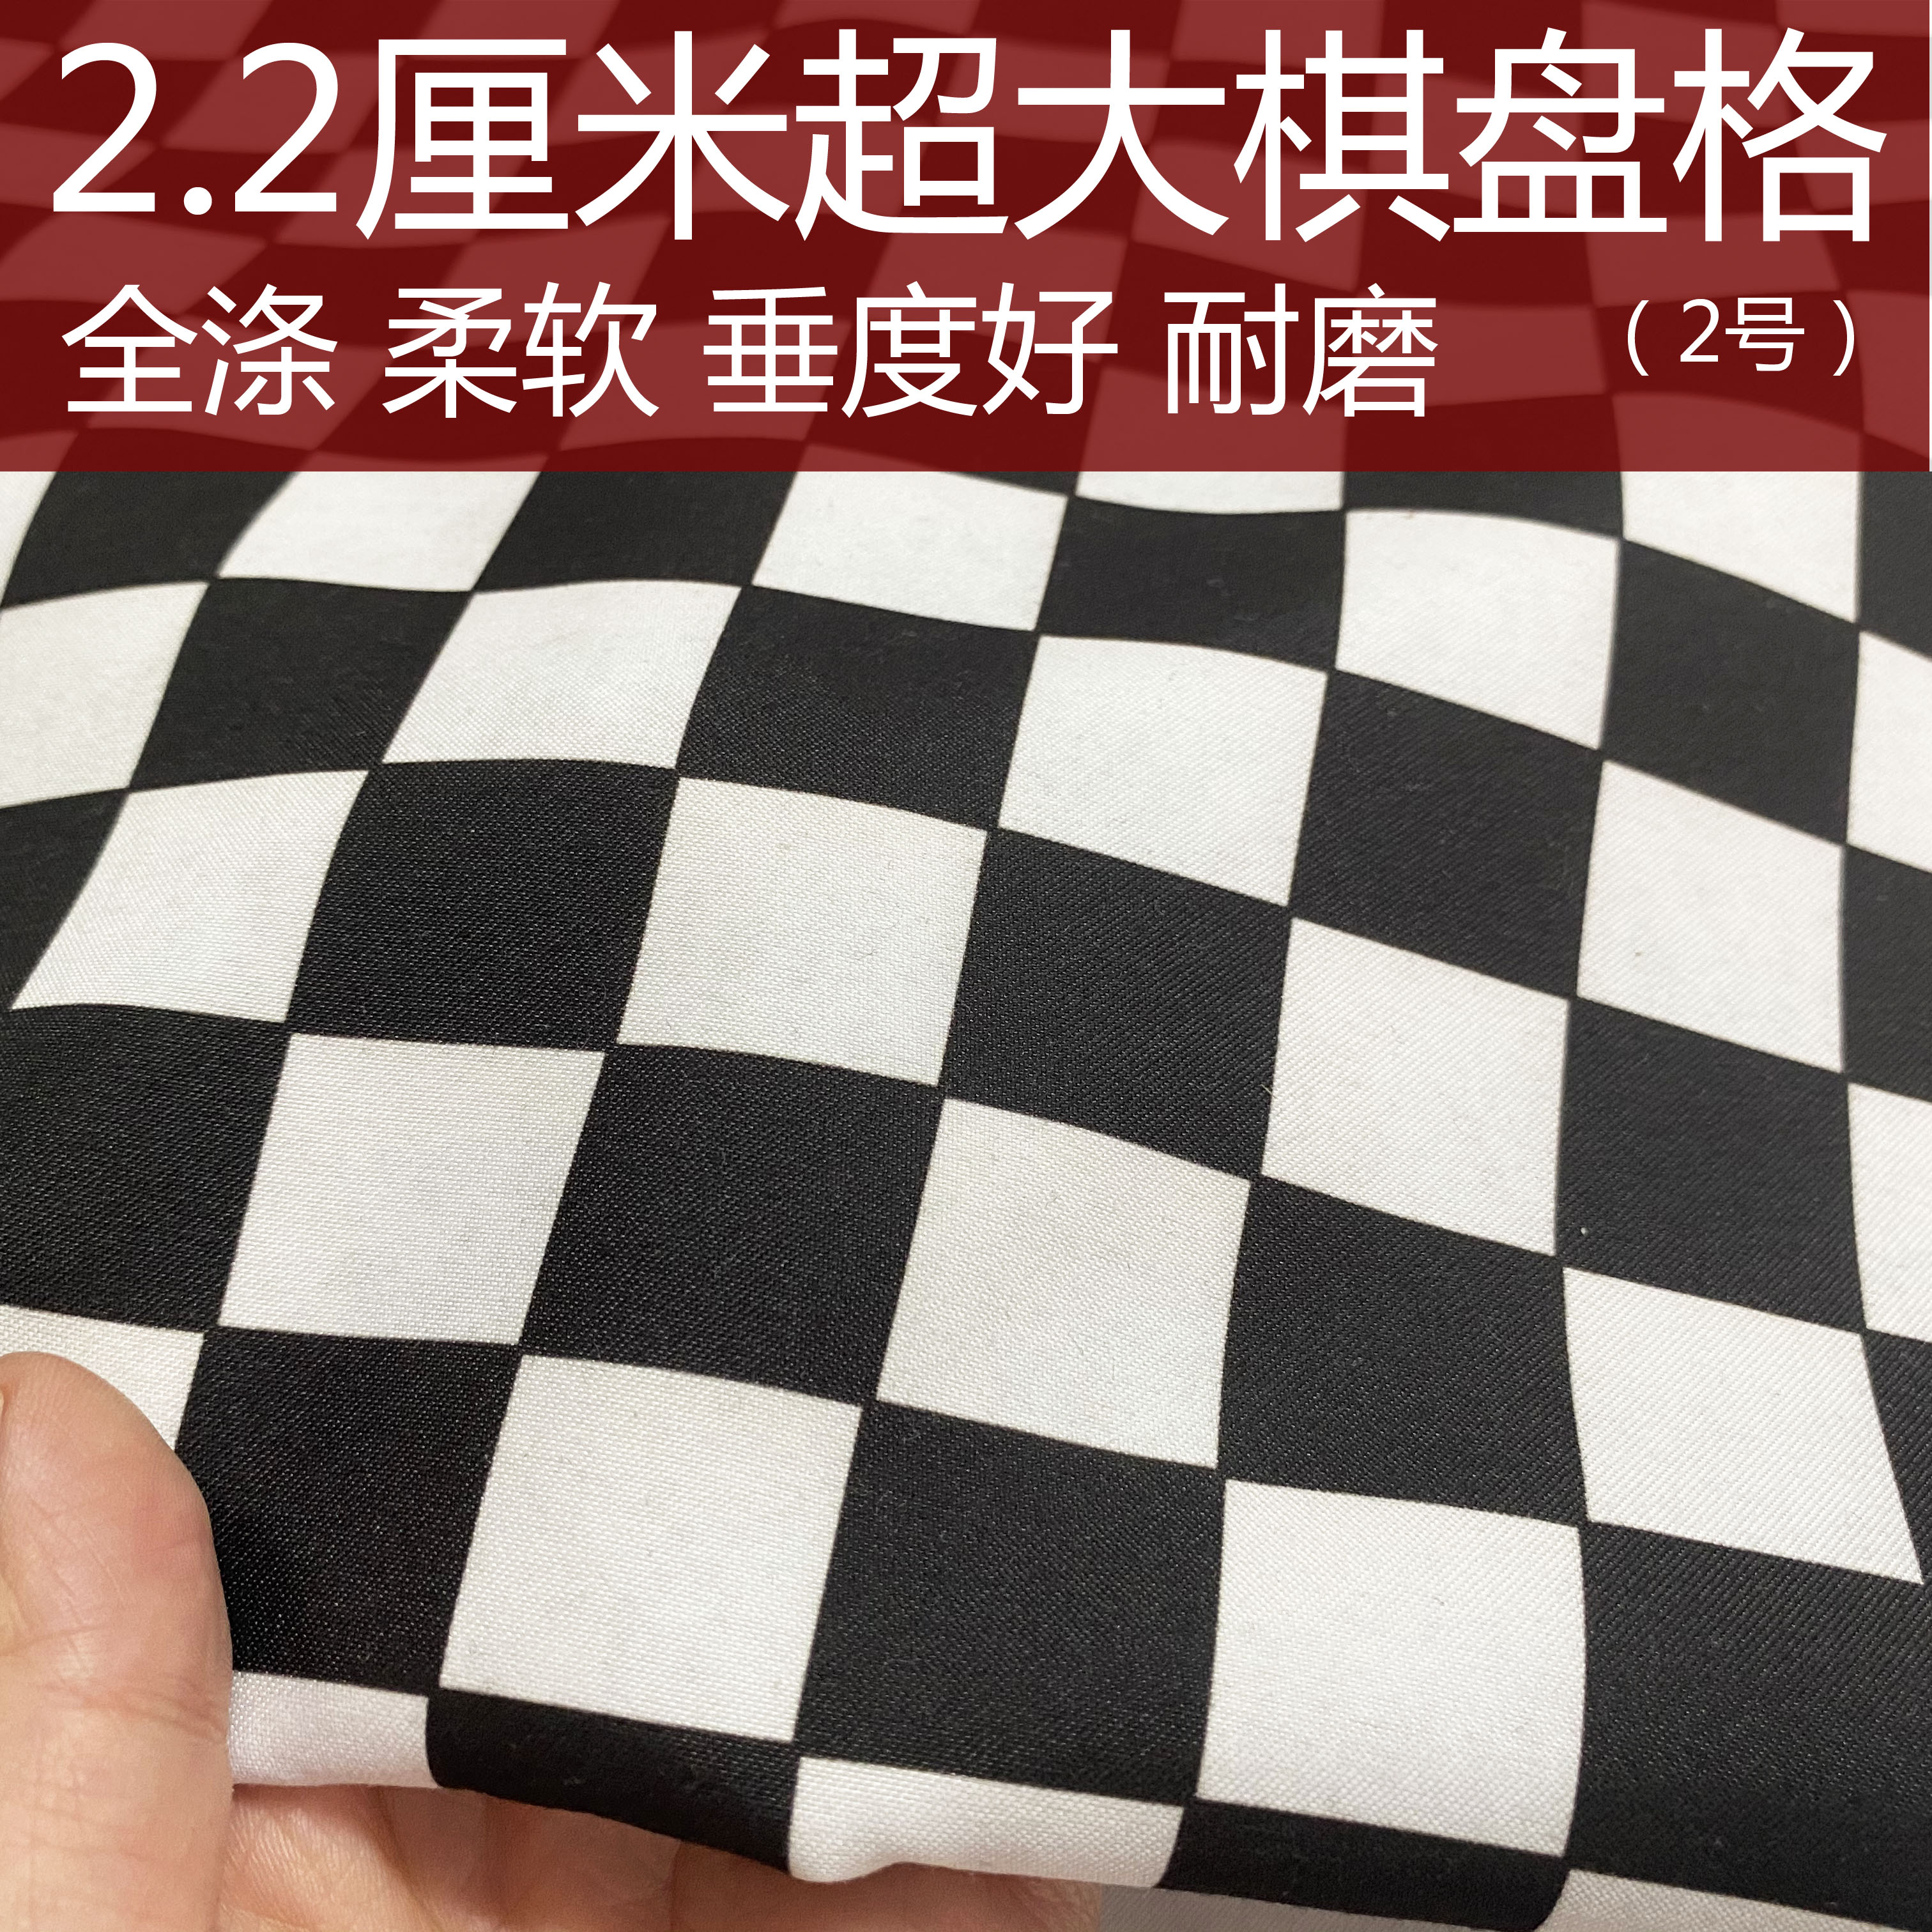 2.2厘米超大黑白马赛克棋盘格面料全涤装饰用布料处理特价